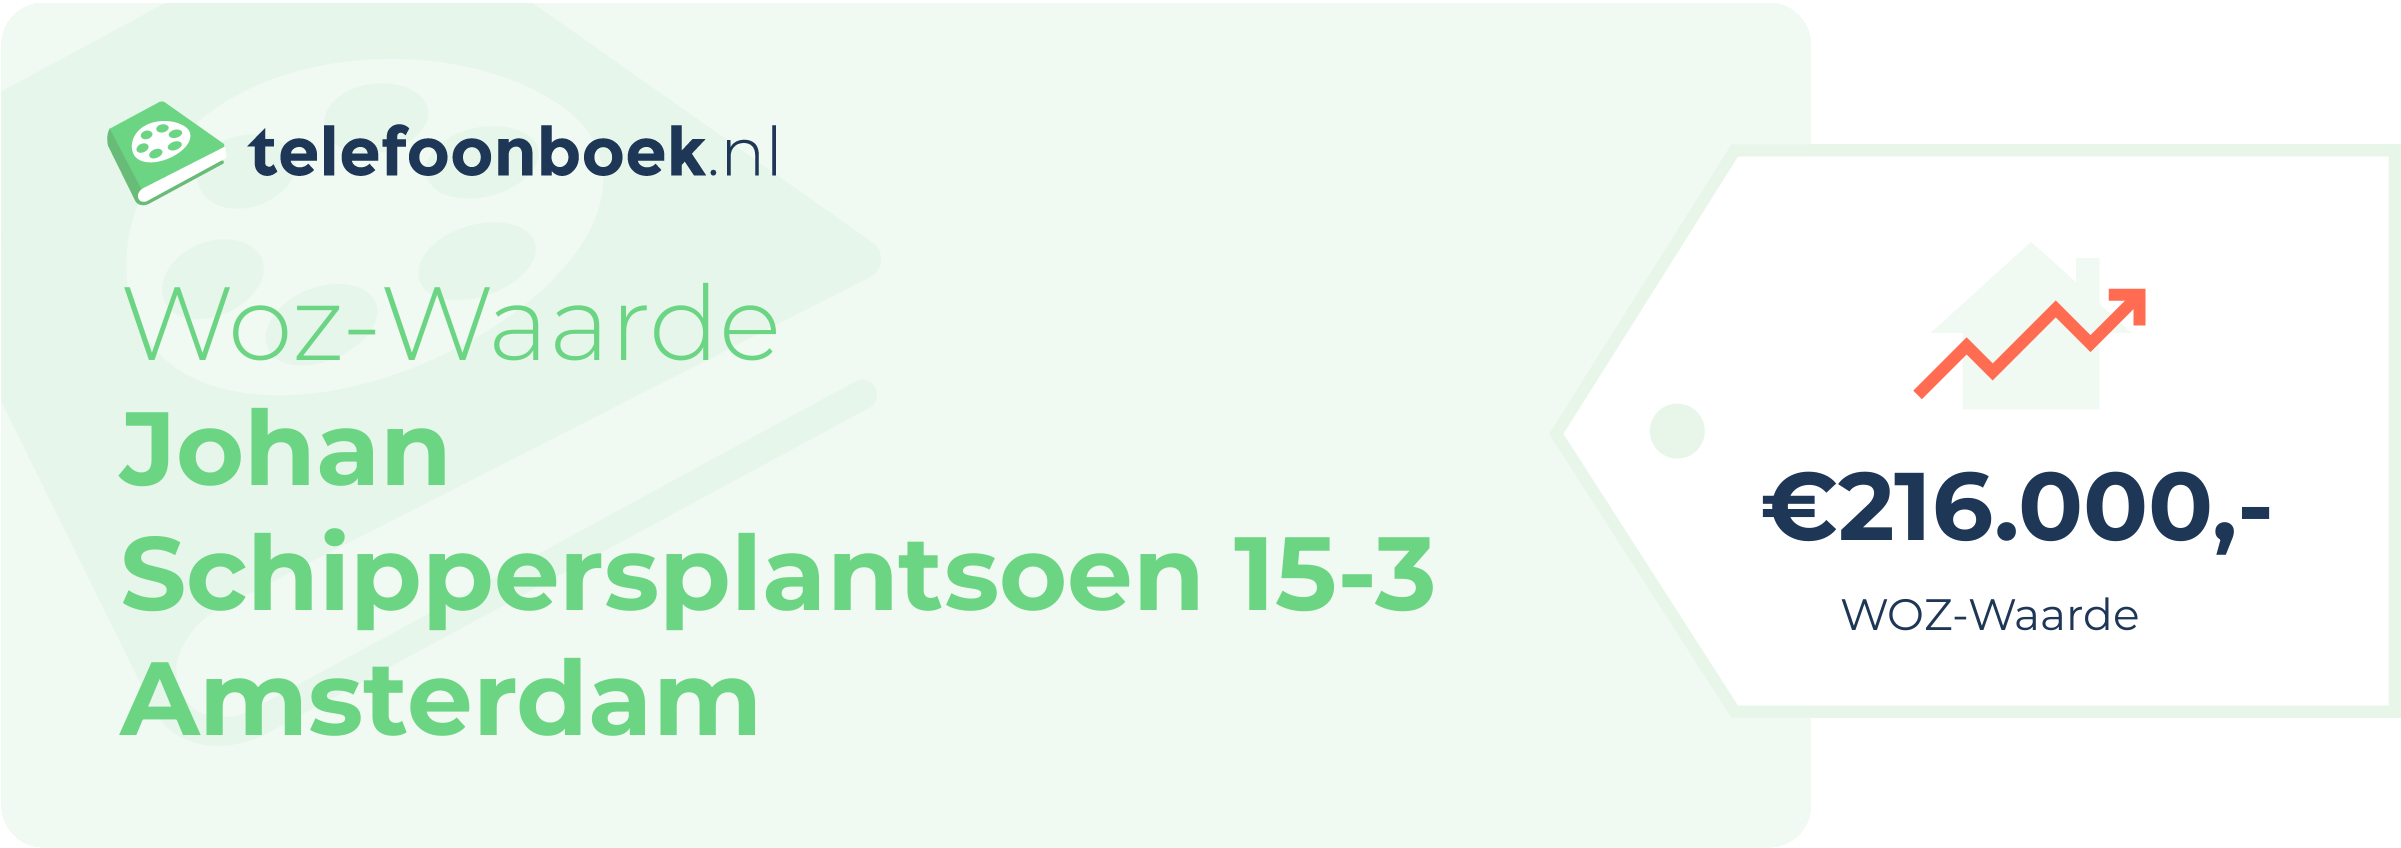 WOZ-waarde Johan Schippersplantsoen 15-3 Amsterdam